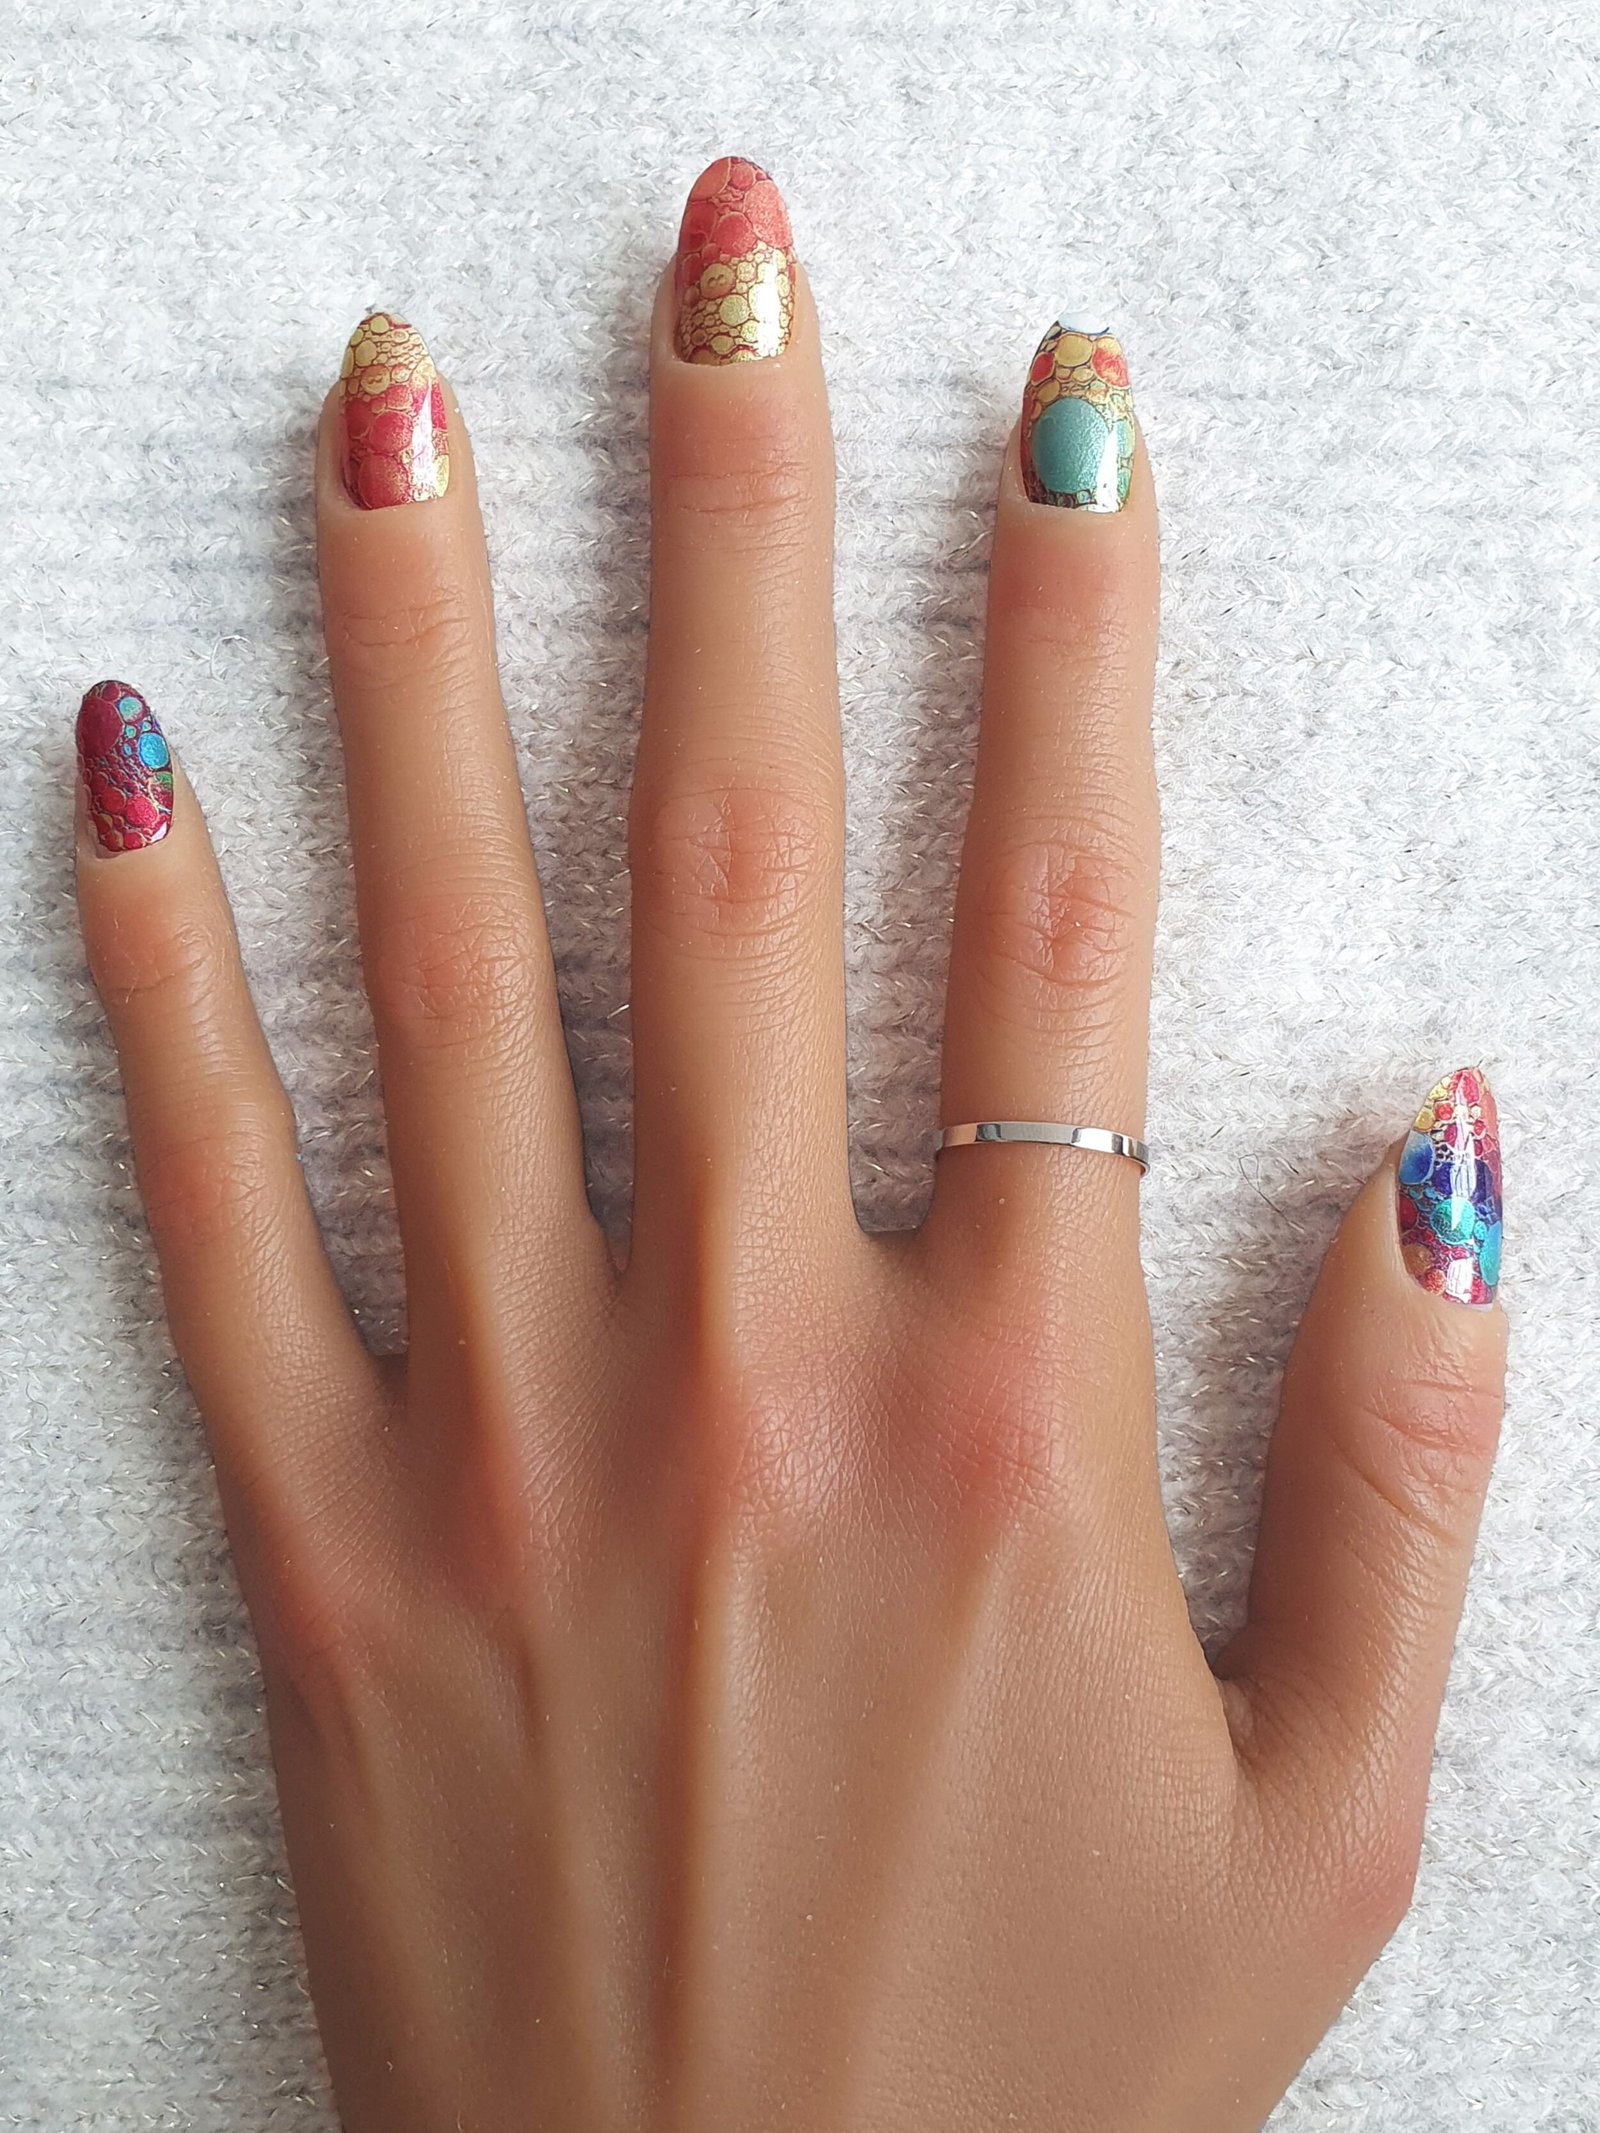 Ongles décorés avec des stickers nail art vifs, aux motifs colorés et métallique.